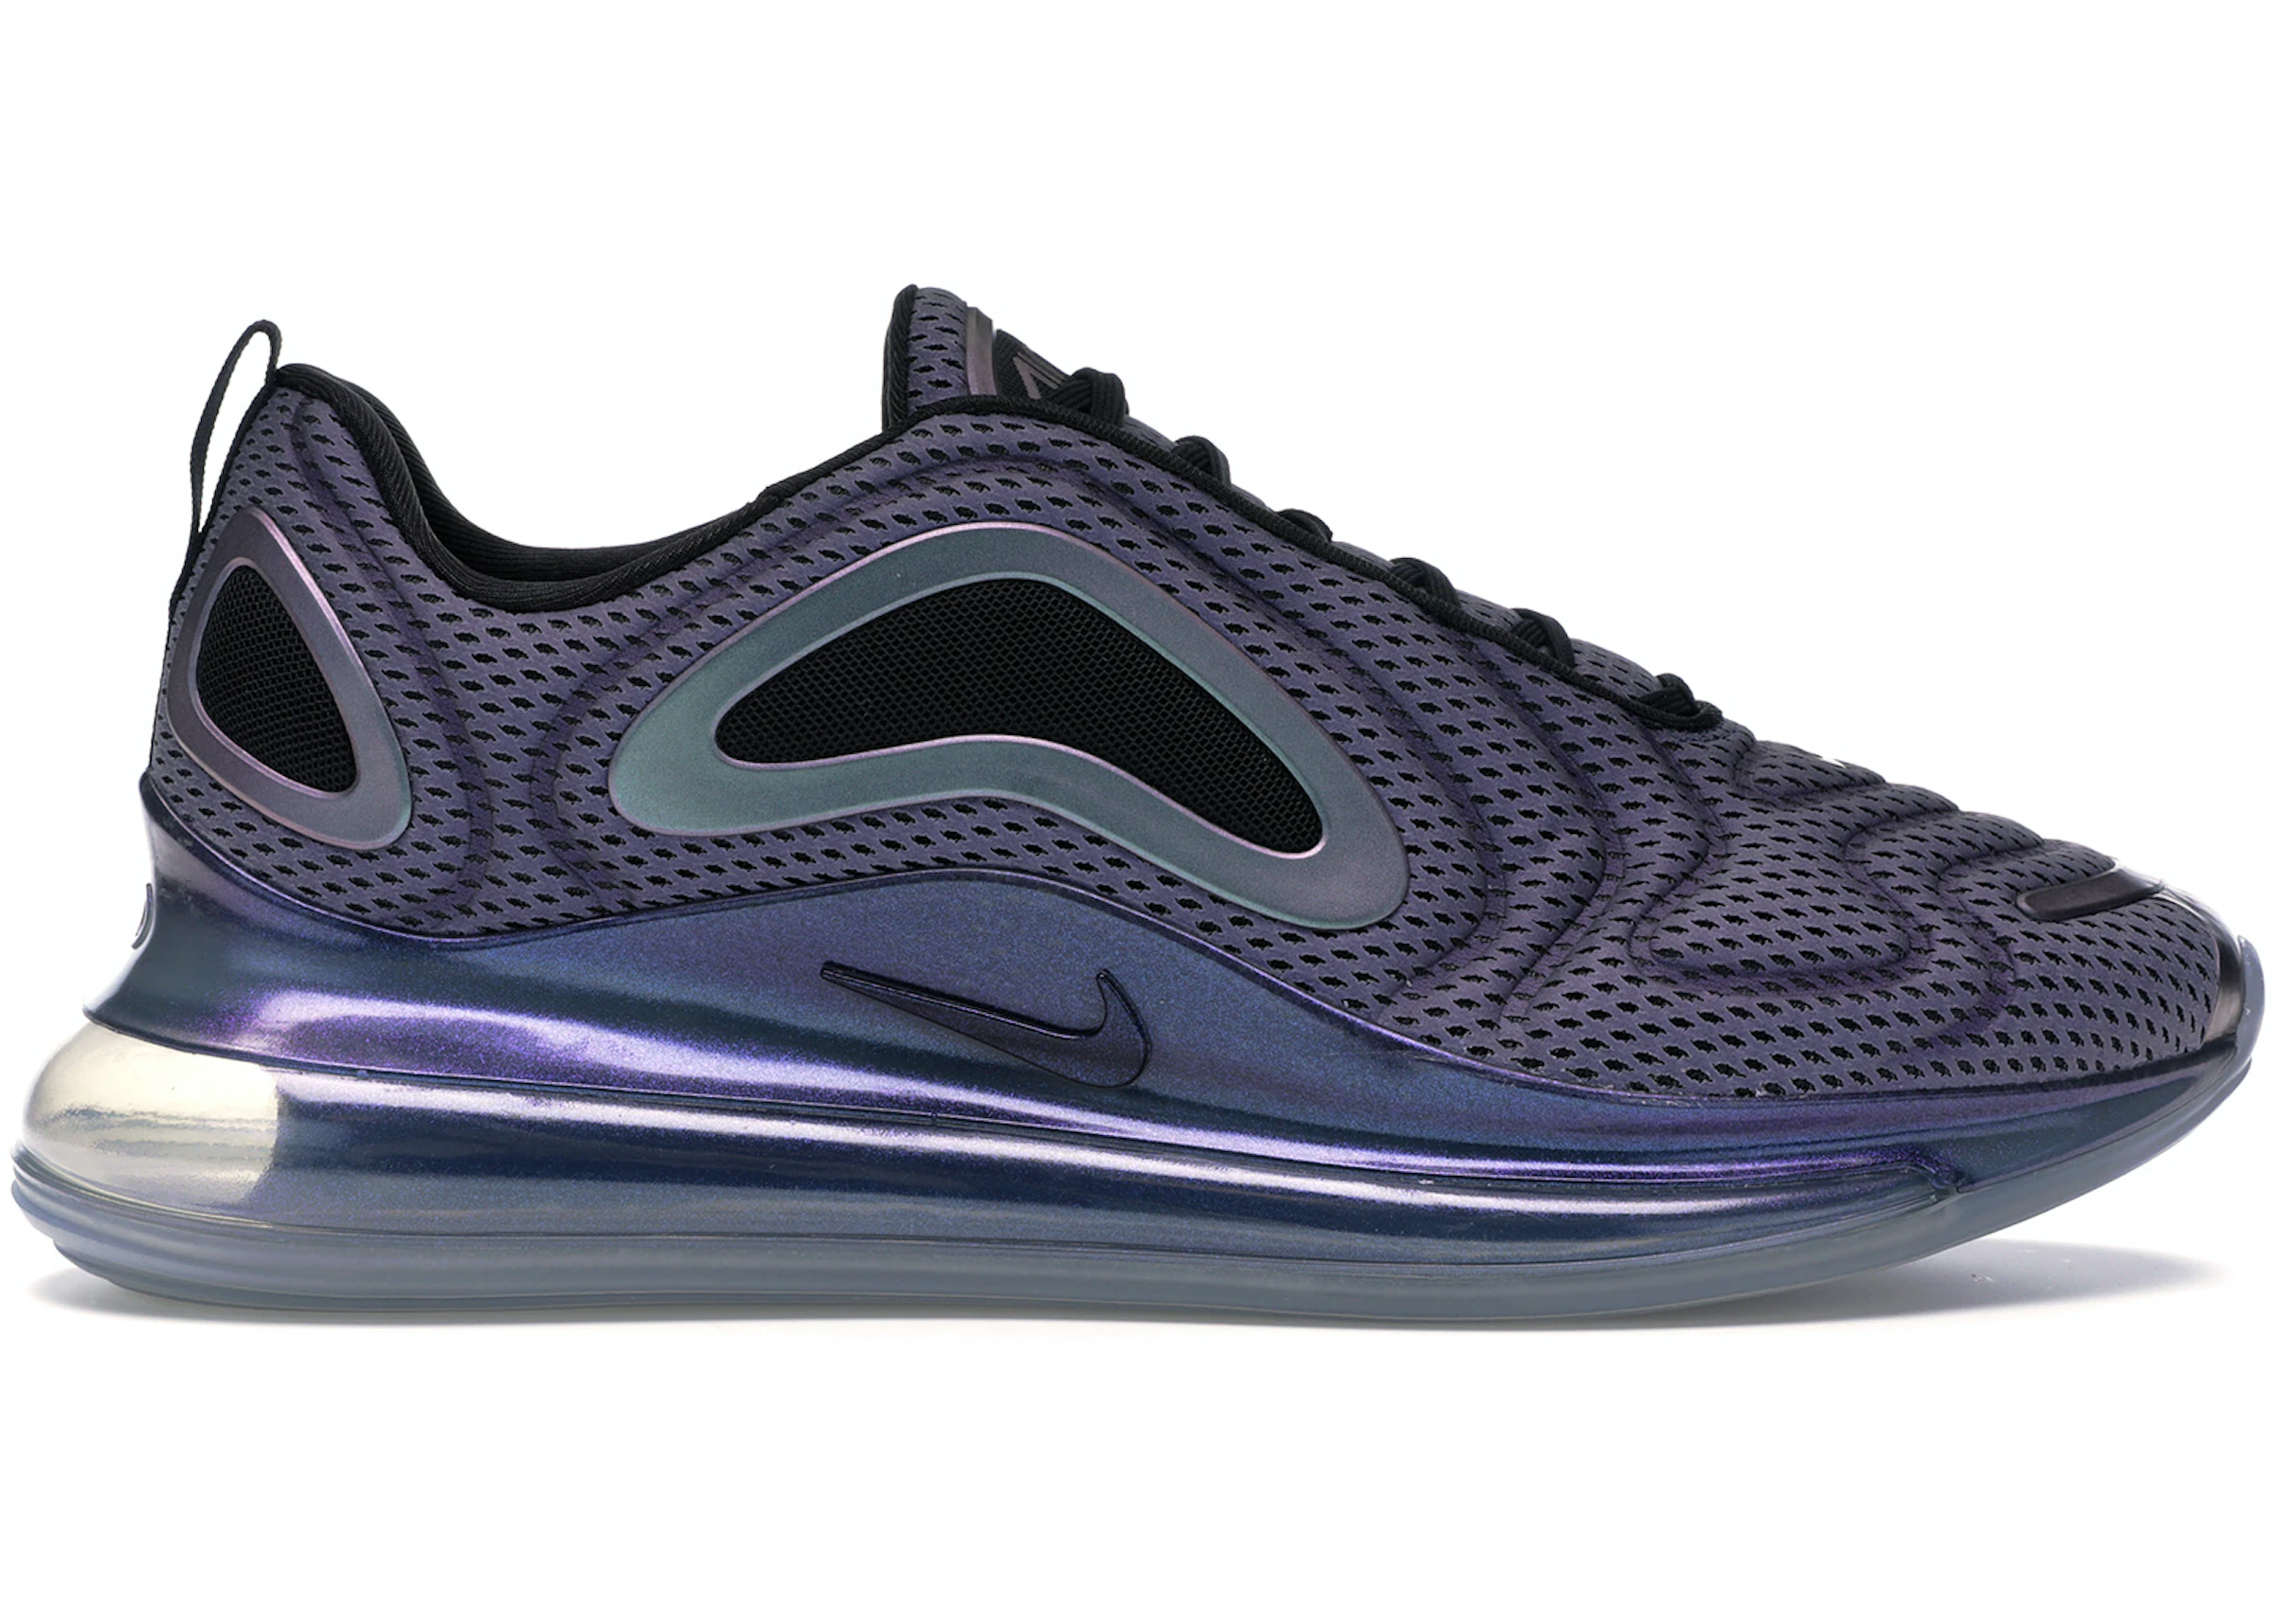 Contagioso Impresión Frenesí Compra Nike Air Max 720 Calzado y sneakers nuevos - StockX